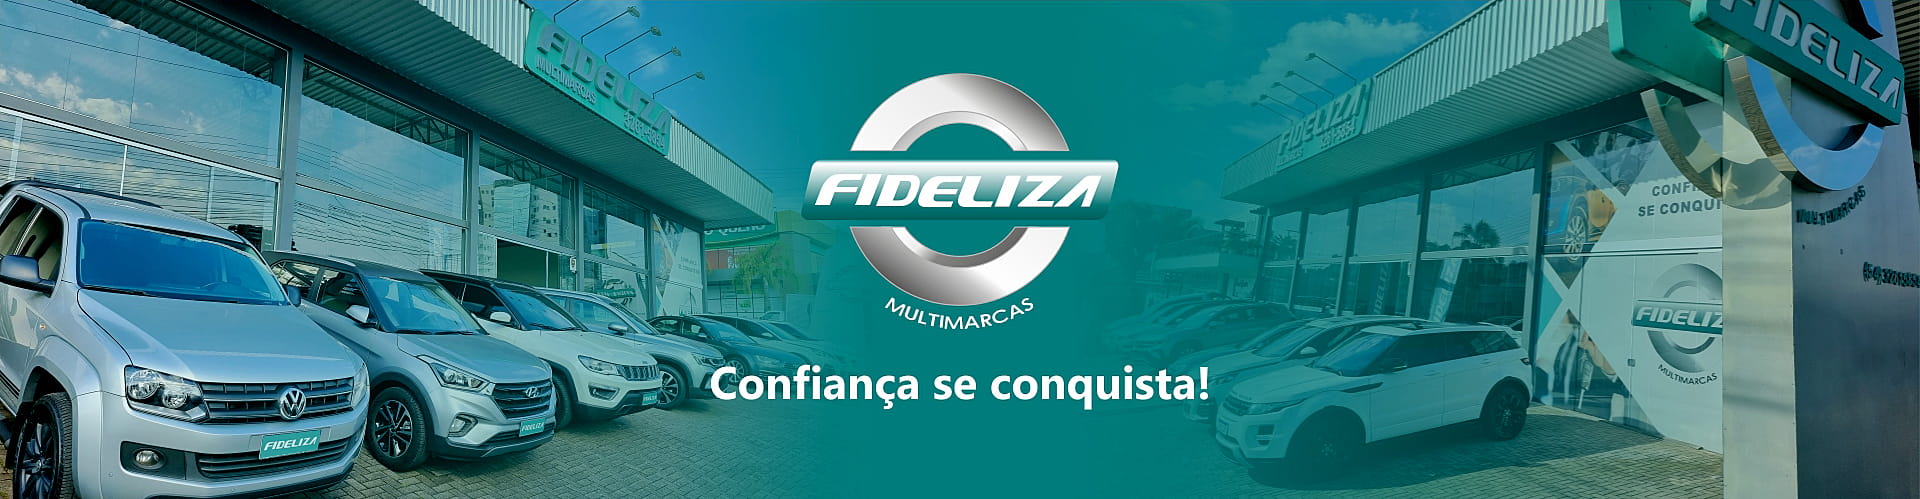 Banner topo desktop Fideliza Multimarcas